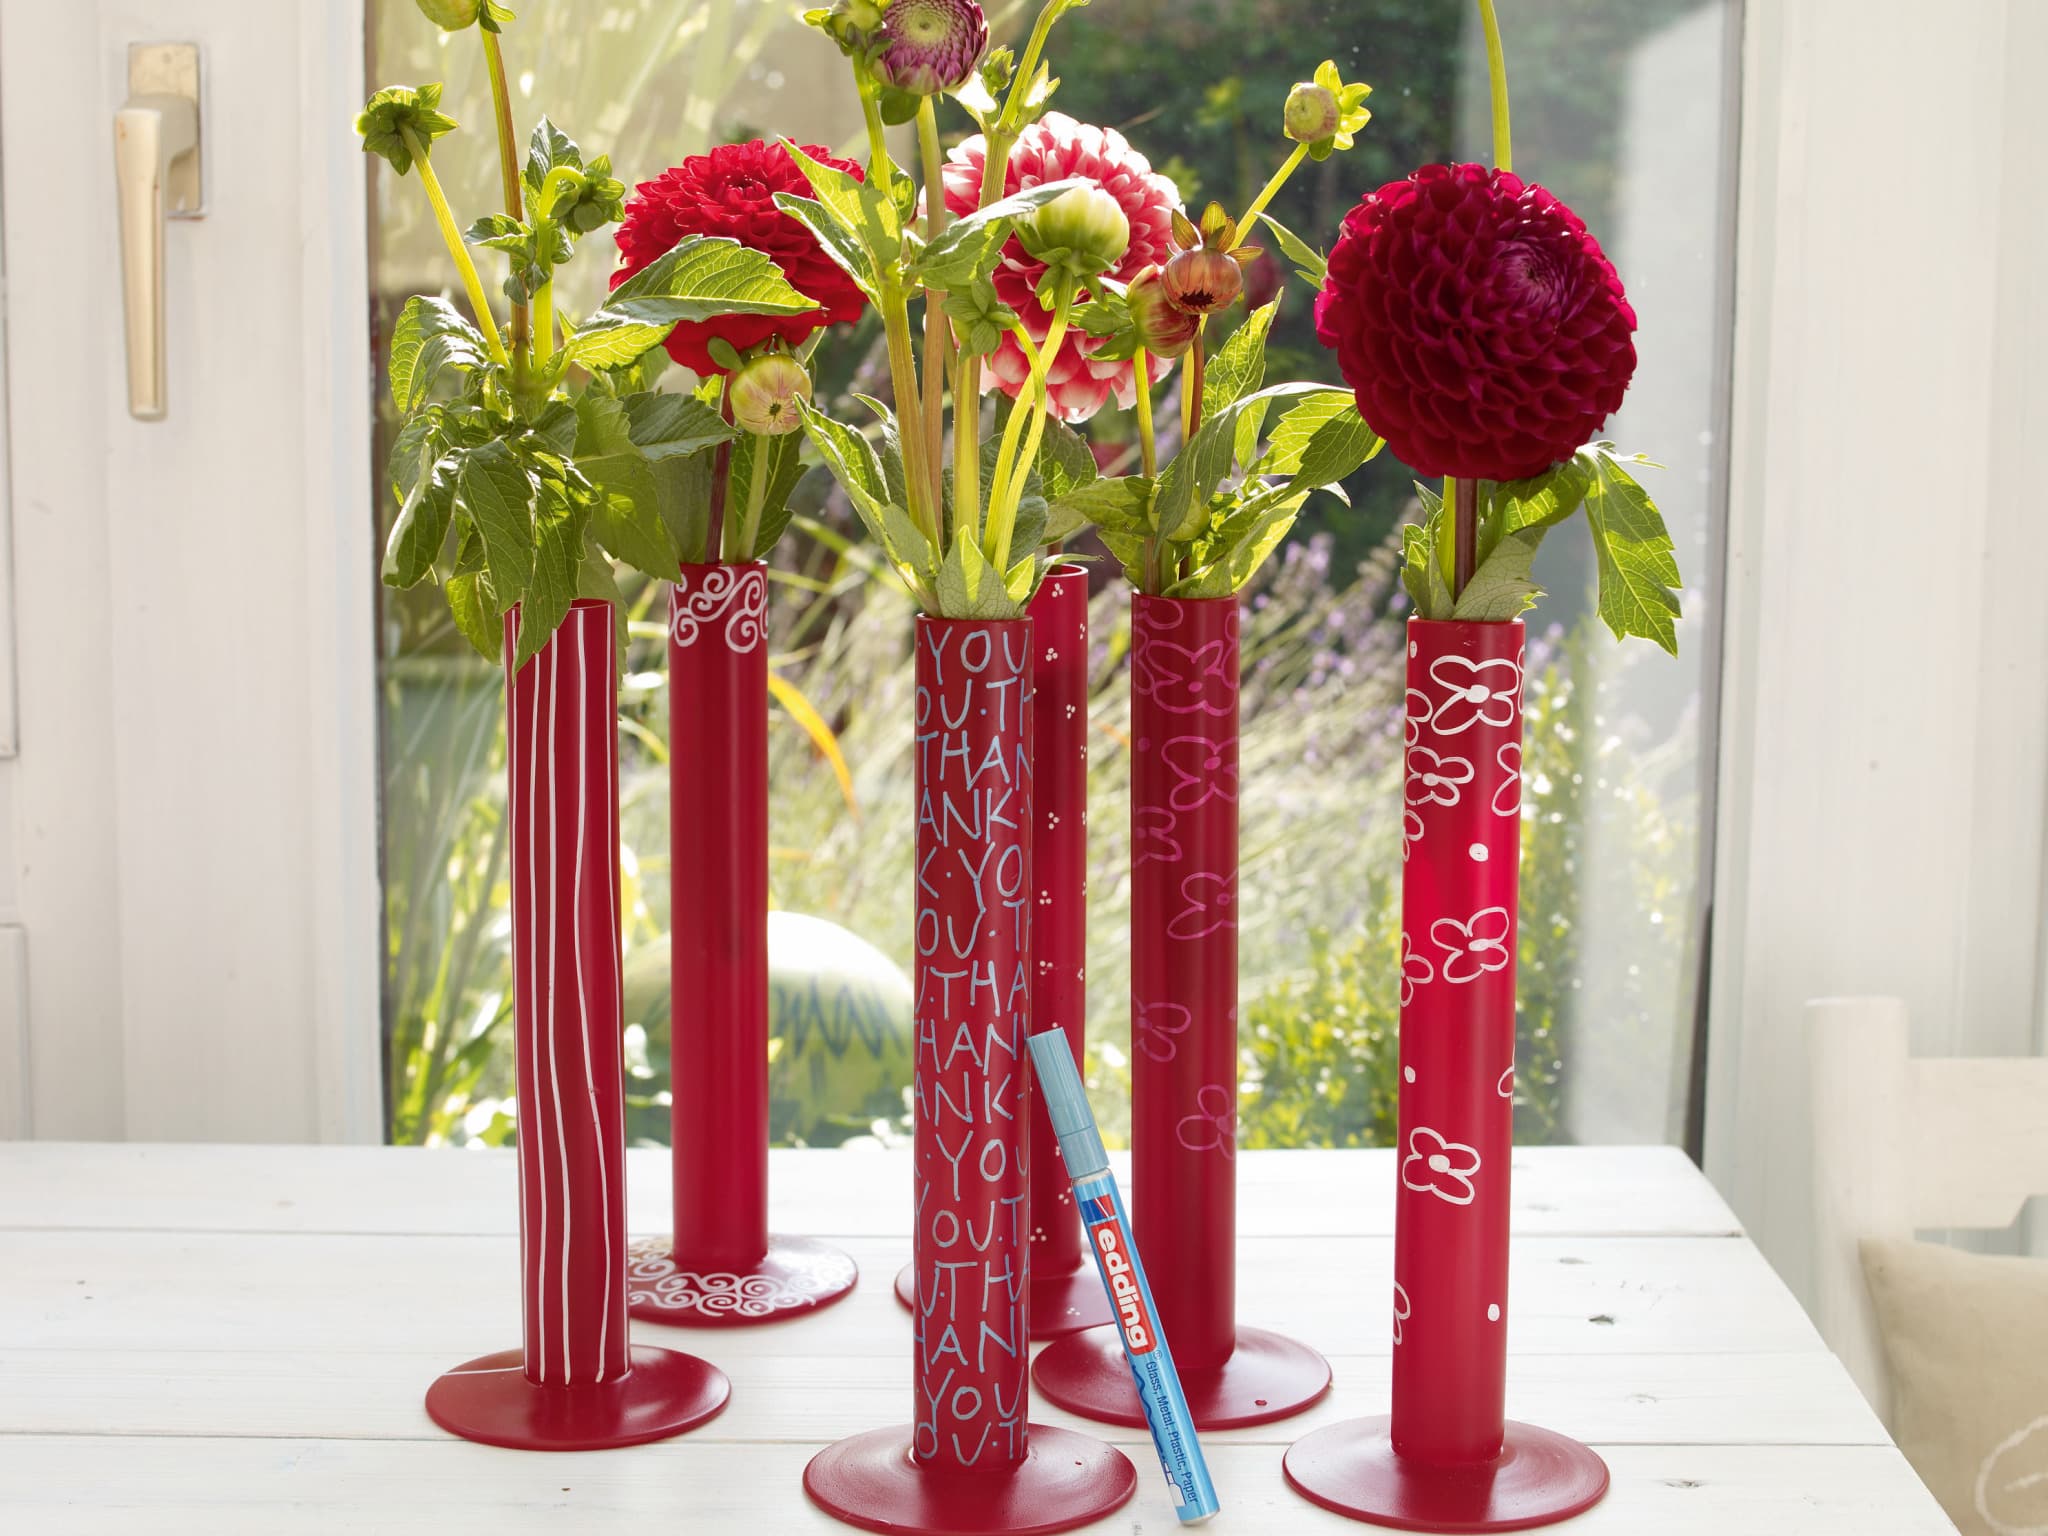 Eine Sammlung leuchtend roter zylindrischer Vasen mit der Aufschrift "Thank You" in Weiß auf der Oberfläche, besprüht mit edding 5200 Permanentspray Acryllack Neon & kräftige Farben für ein glänzendes Finish, gefüllt mit einer Auswahl an wunderschönen roten